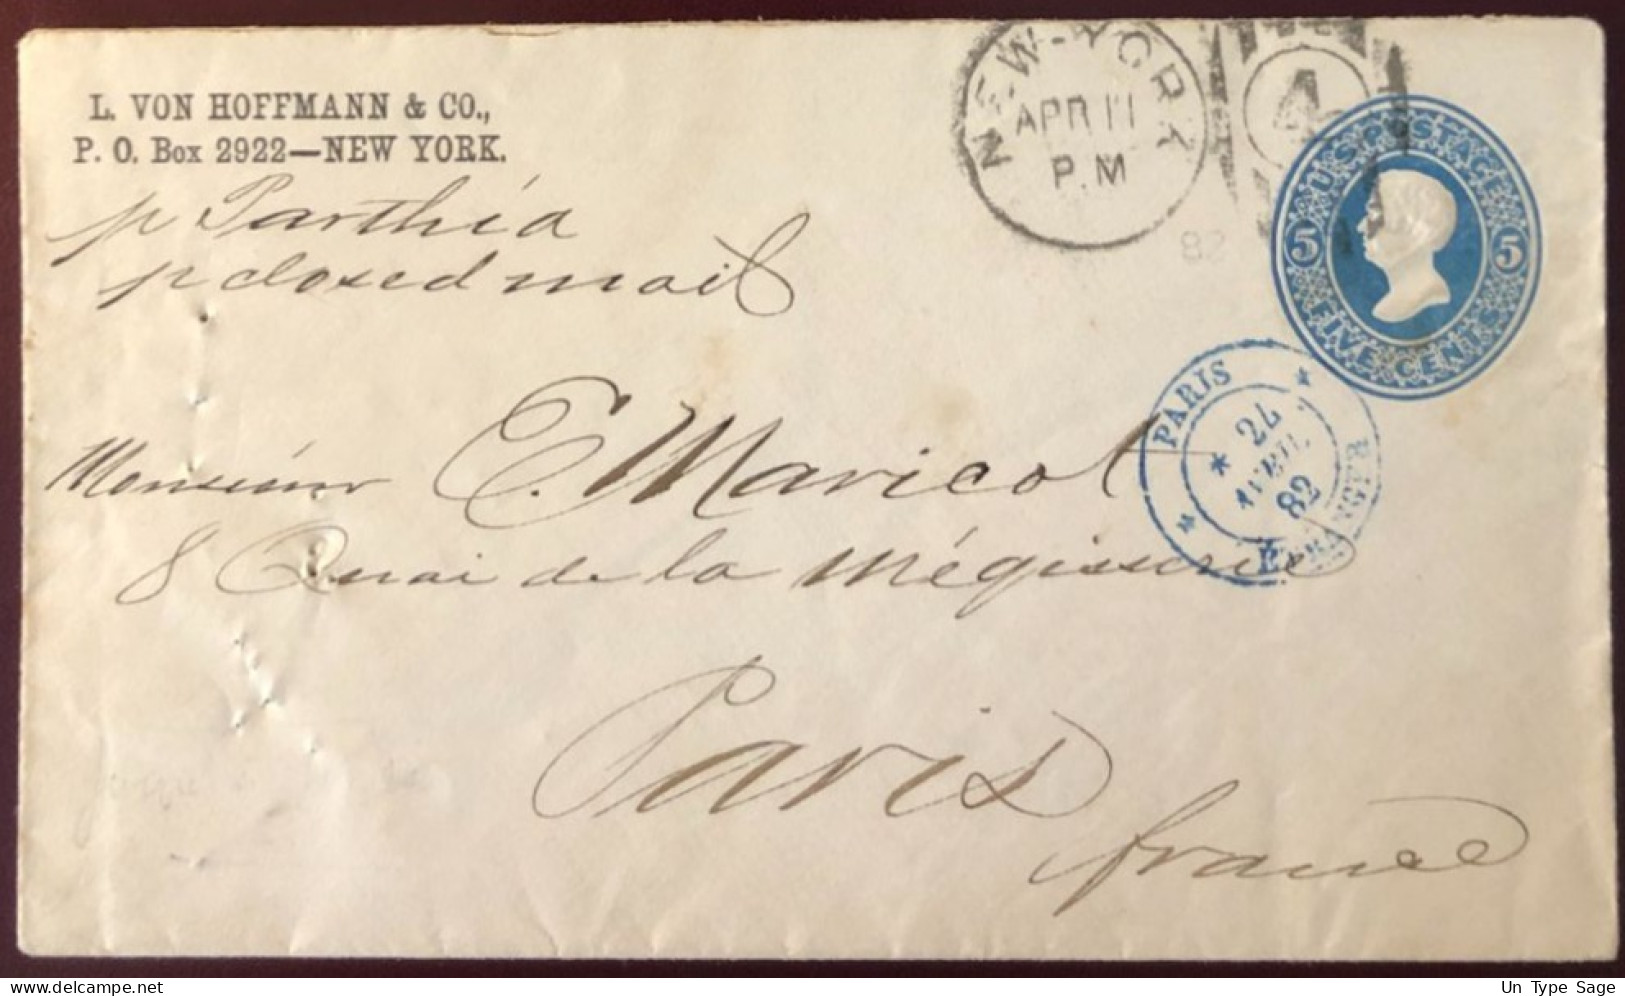 Etats-Unis Entier-enveloppe De New-York Pour La France (TAD PARIS / ETRANGER 24.4.1882) - (B1343) - ...-1900